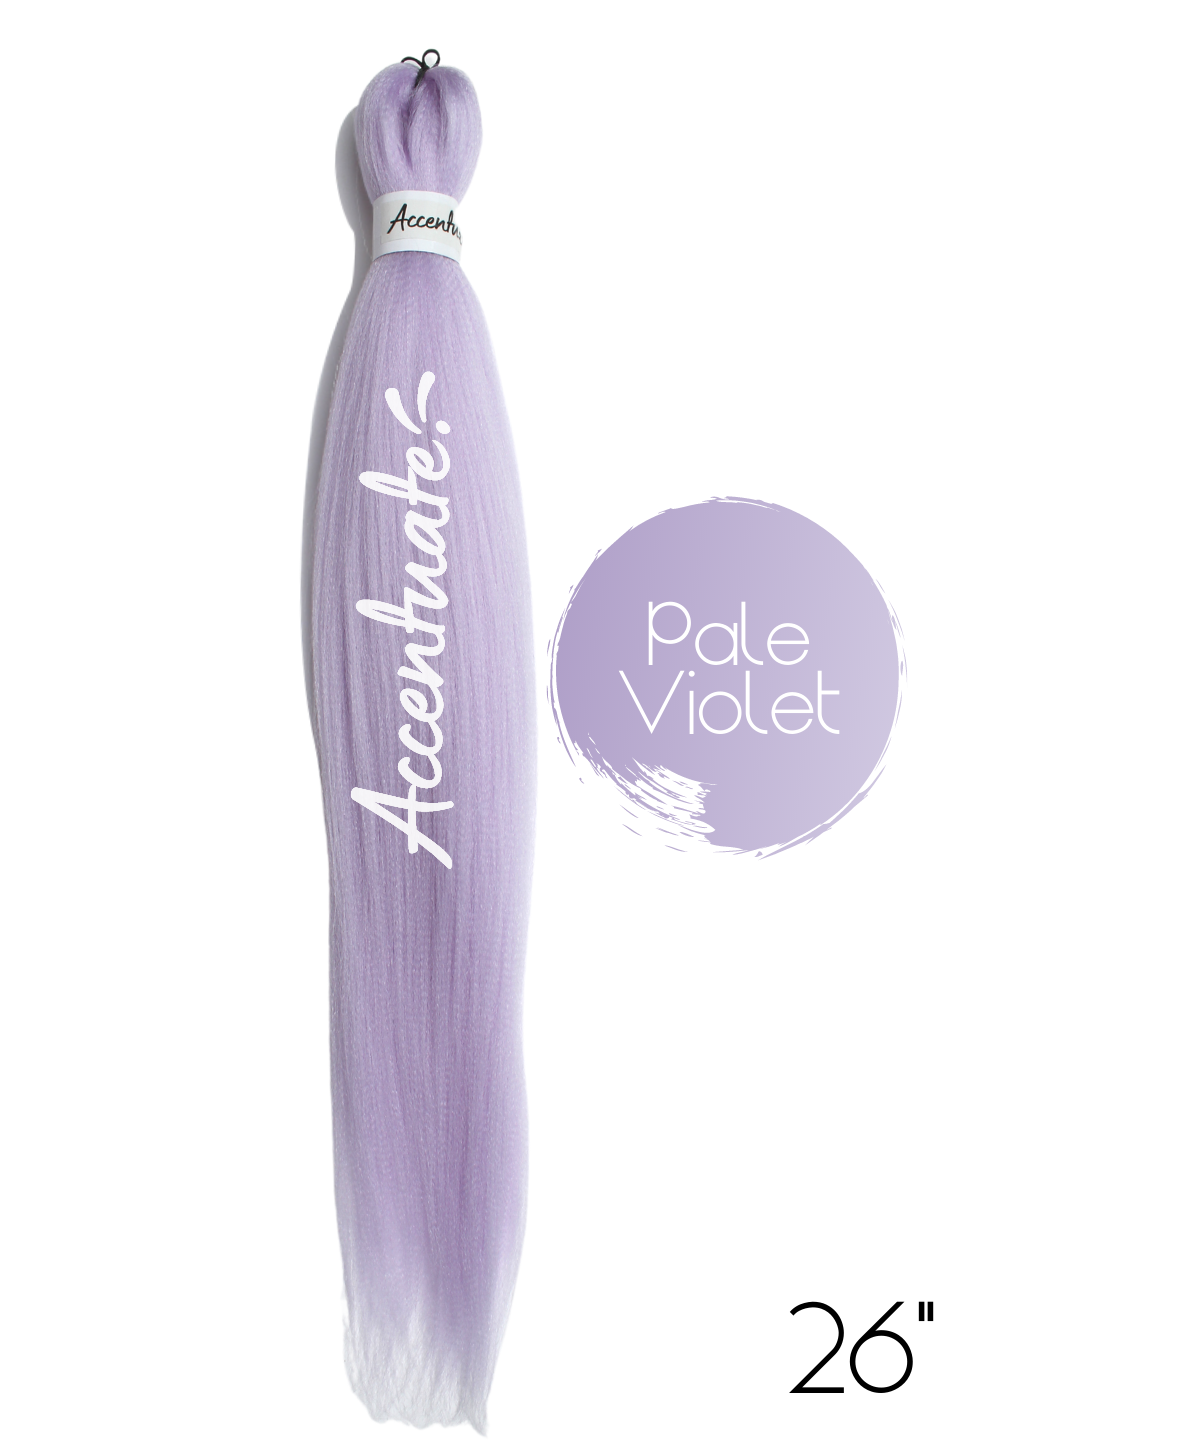 26" Plain Pale Violet Pre-Stretched Hair Extension